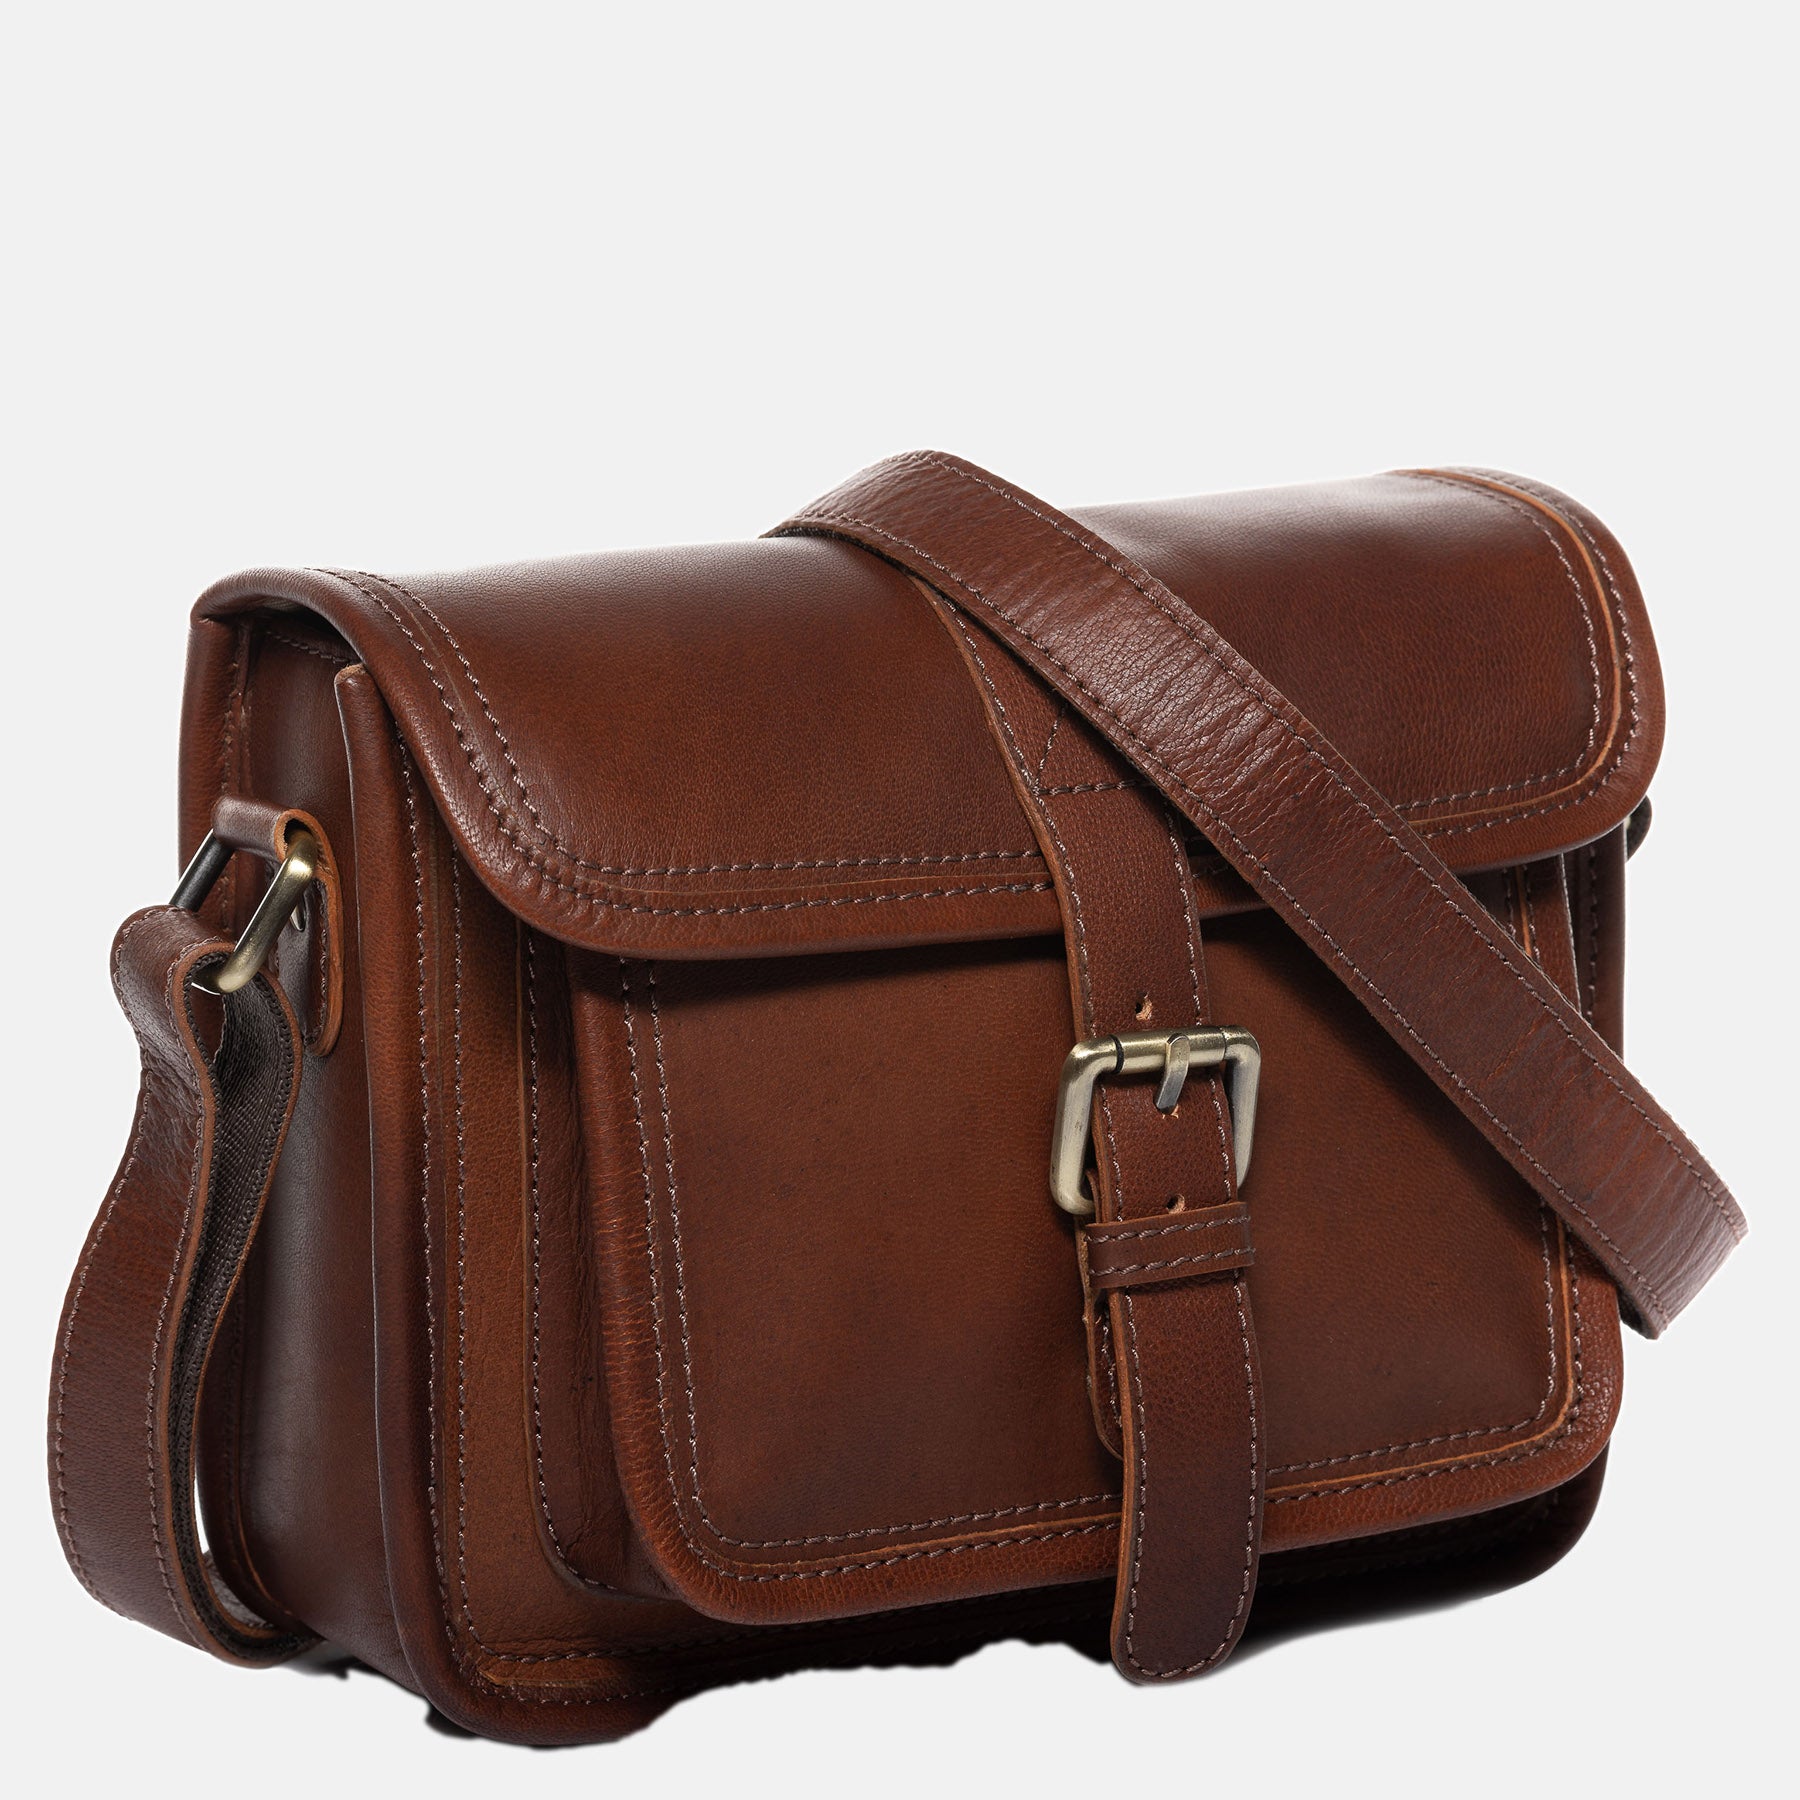 Shoulder bag LIV smooth leather light brown